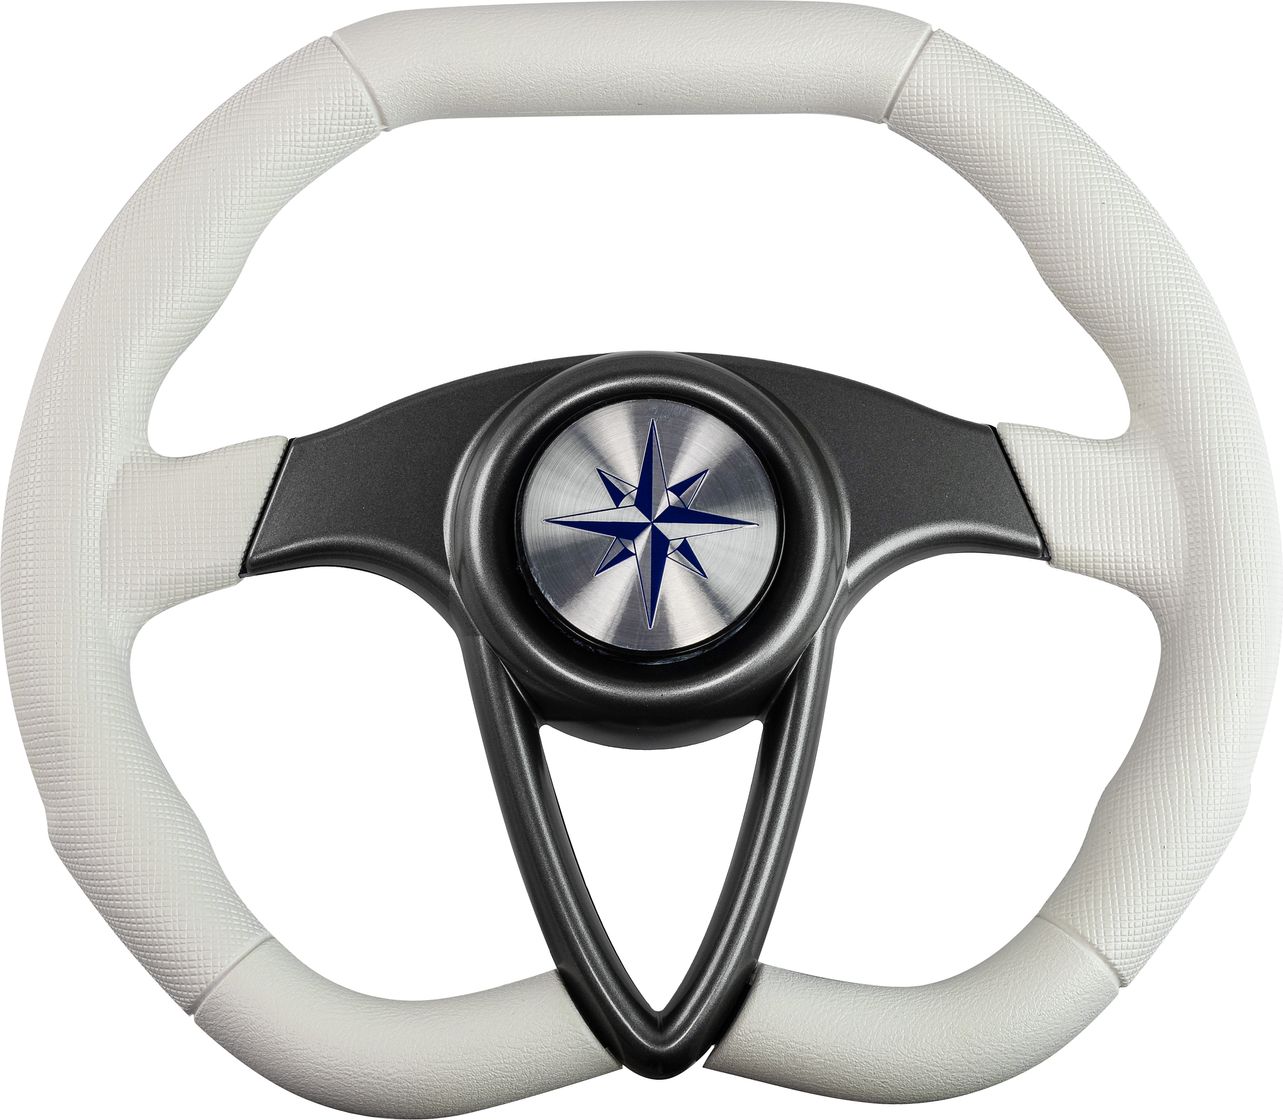 Рулевое колесо BARRACUDA обод белый, спицы серебряные д. 350 мм VN135002-08 рулевое колесо riviera белый обод и спицы д 350 мм vn8001 08